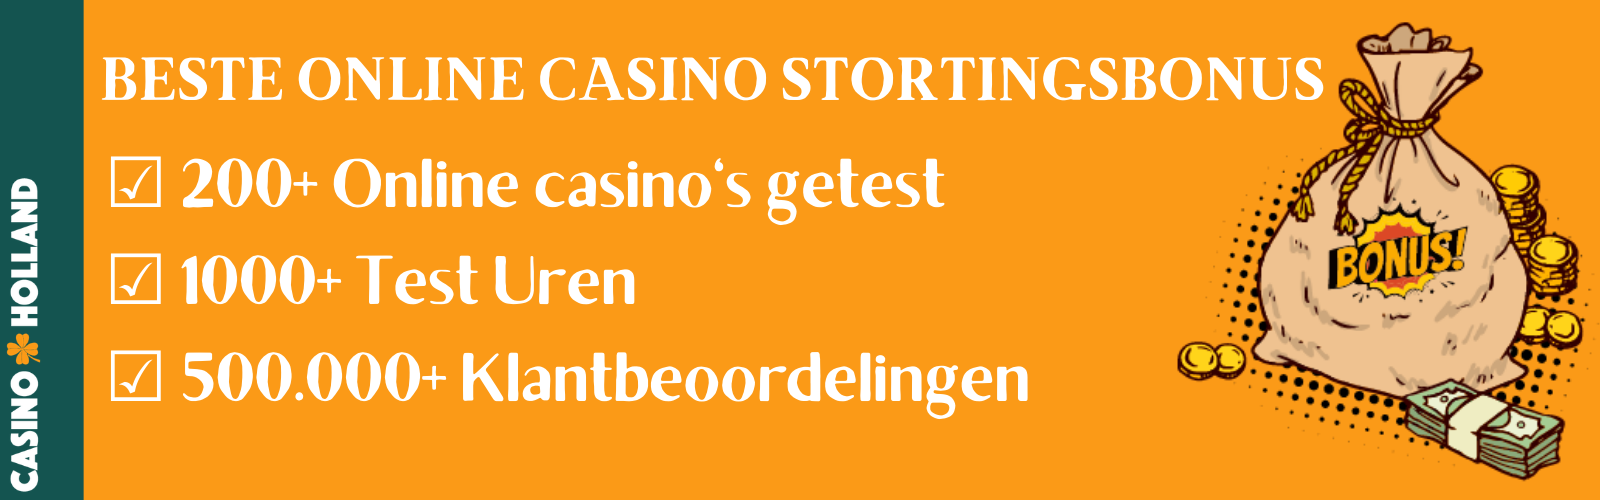 Online casino stortingsbonus